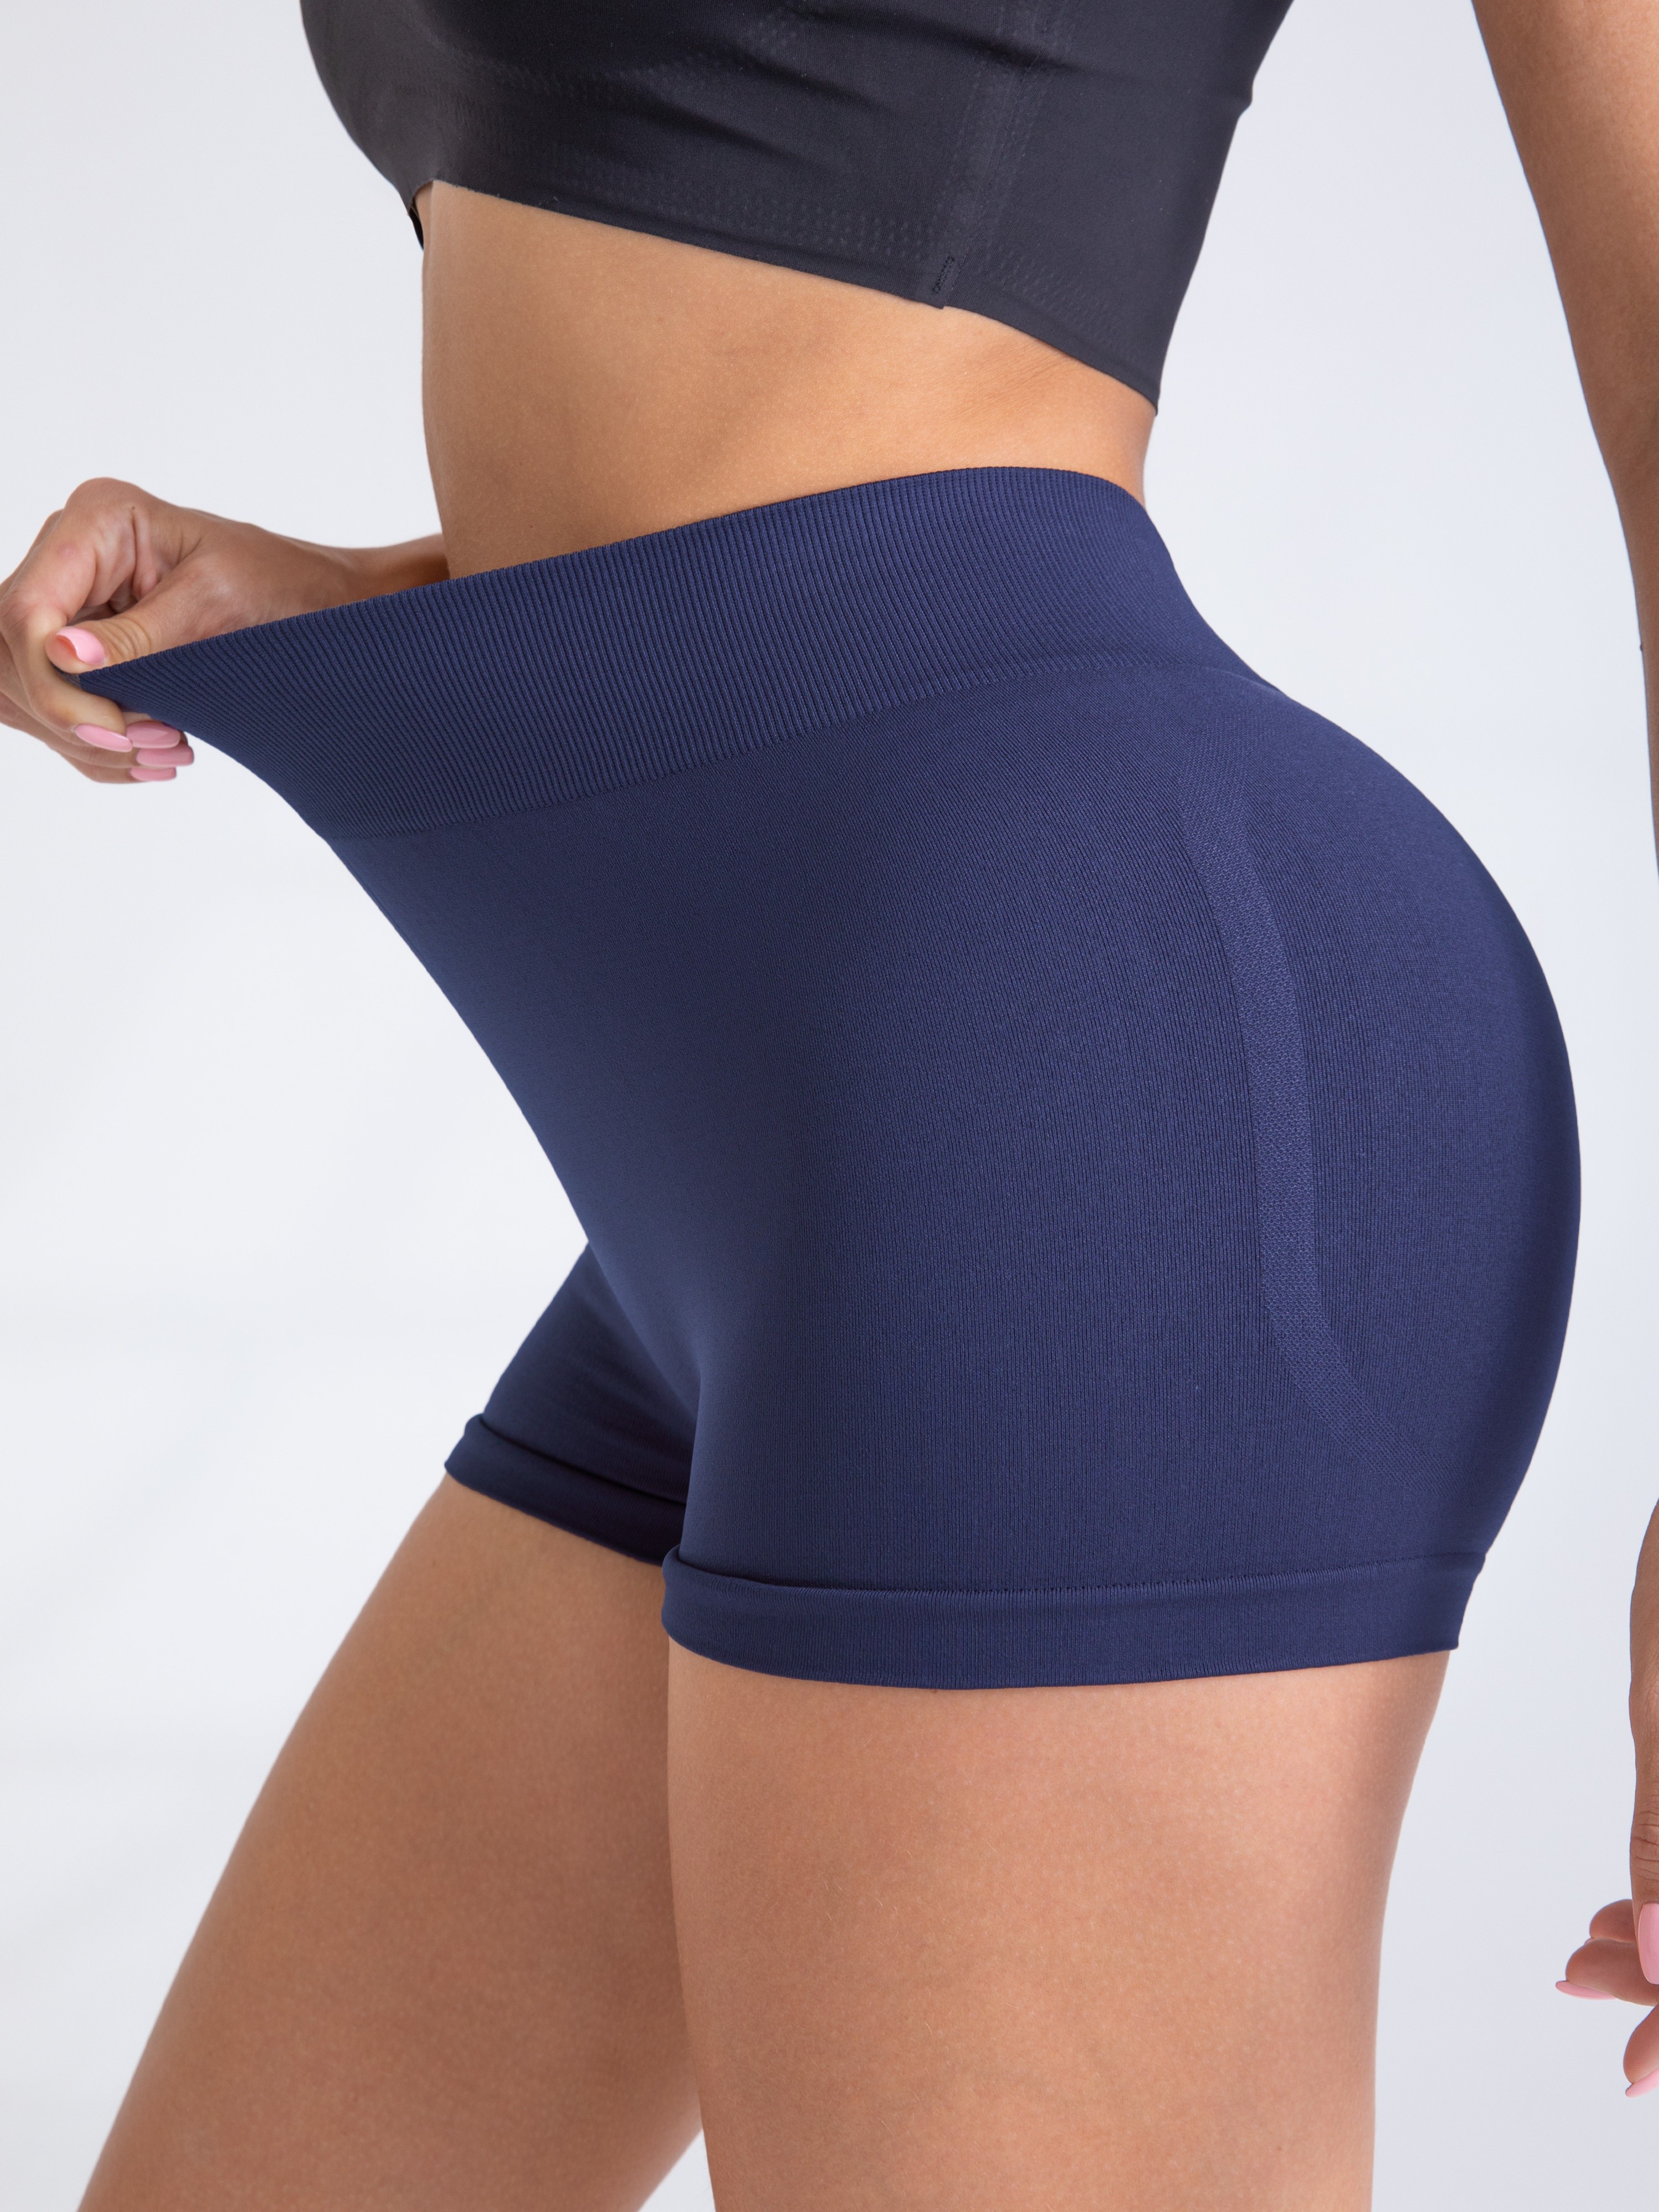 Pantalones cortos deportivos de LICRA sin costuras para mujer